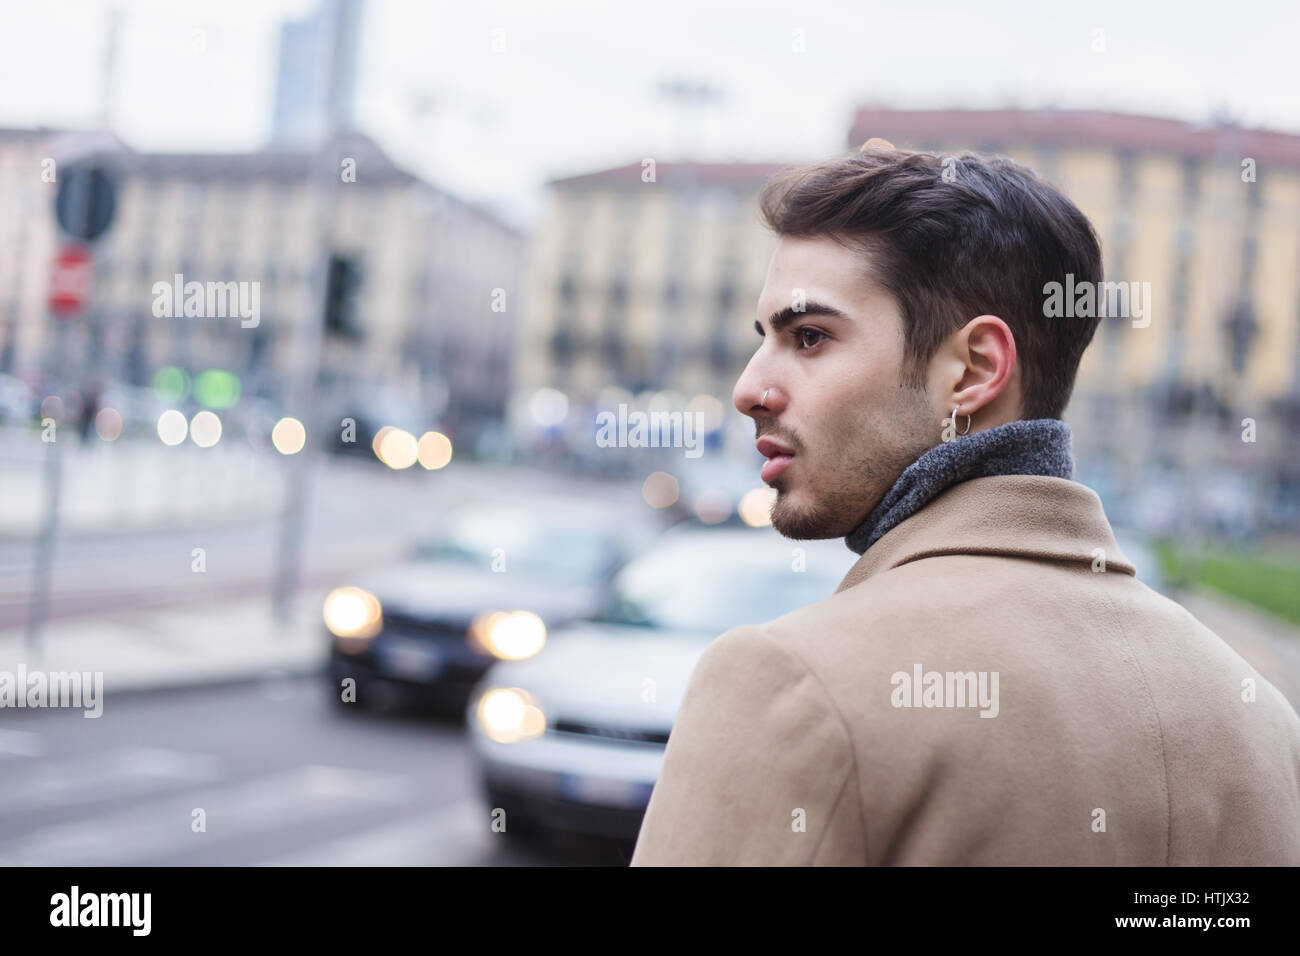 Schöner junger Mann mit kurzen Haaren posiert im urbanen Kontext Stockfoto